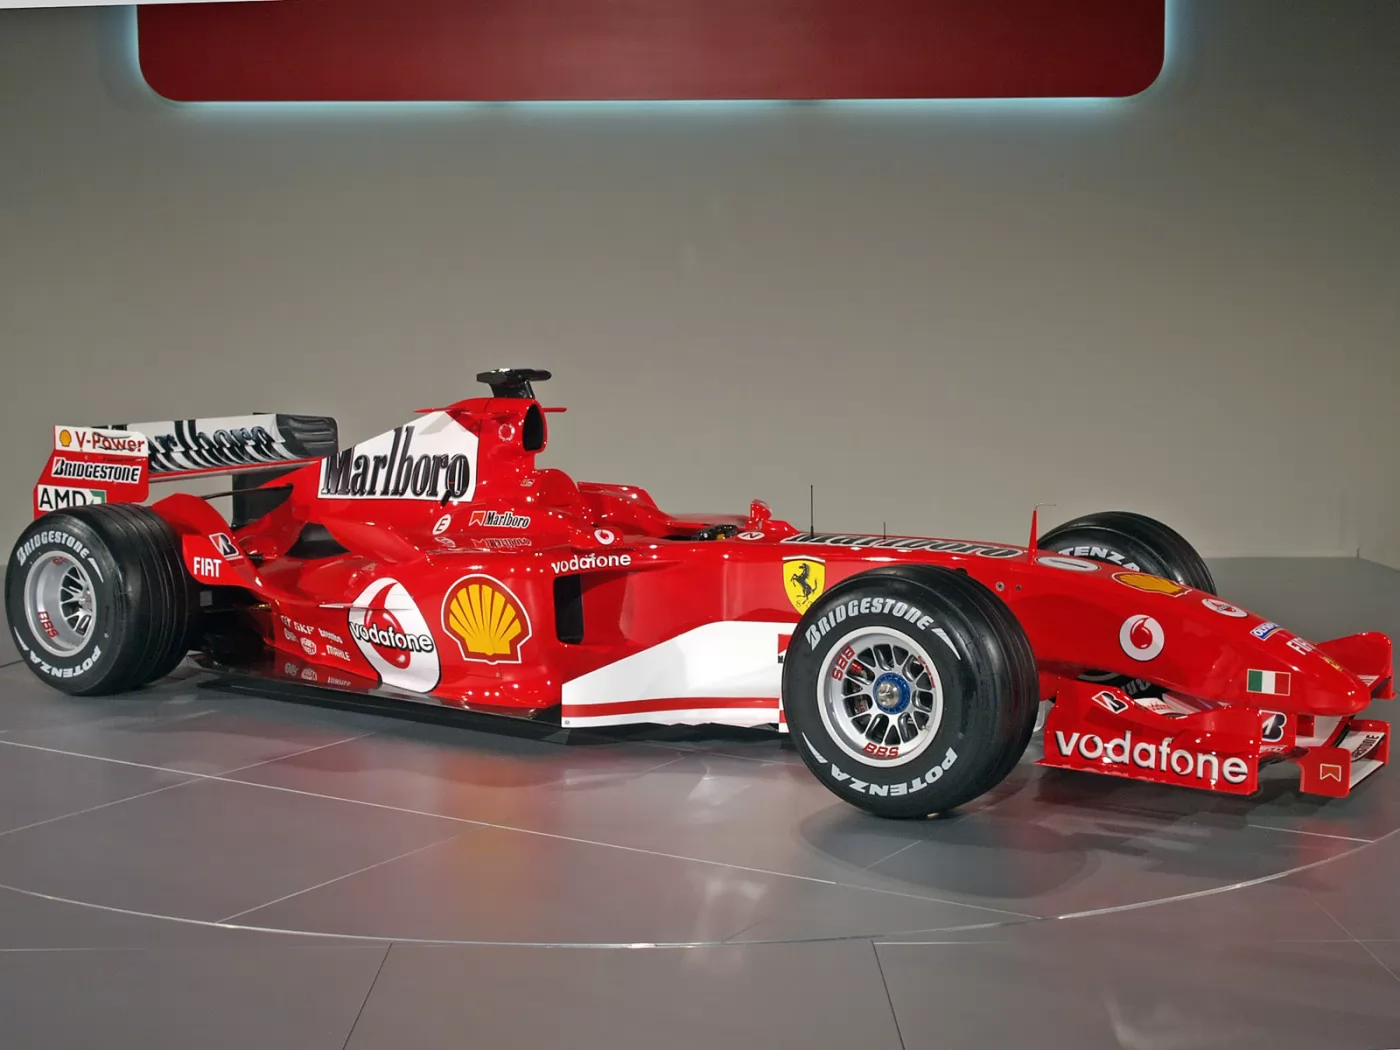 Ferrari F2005, Ferrari, Formula 1, автомобили, гоночный автомобиль, клипарт, красное, техника х